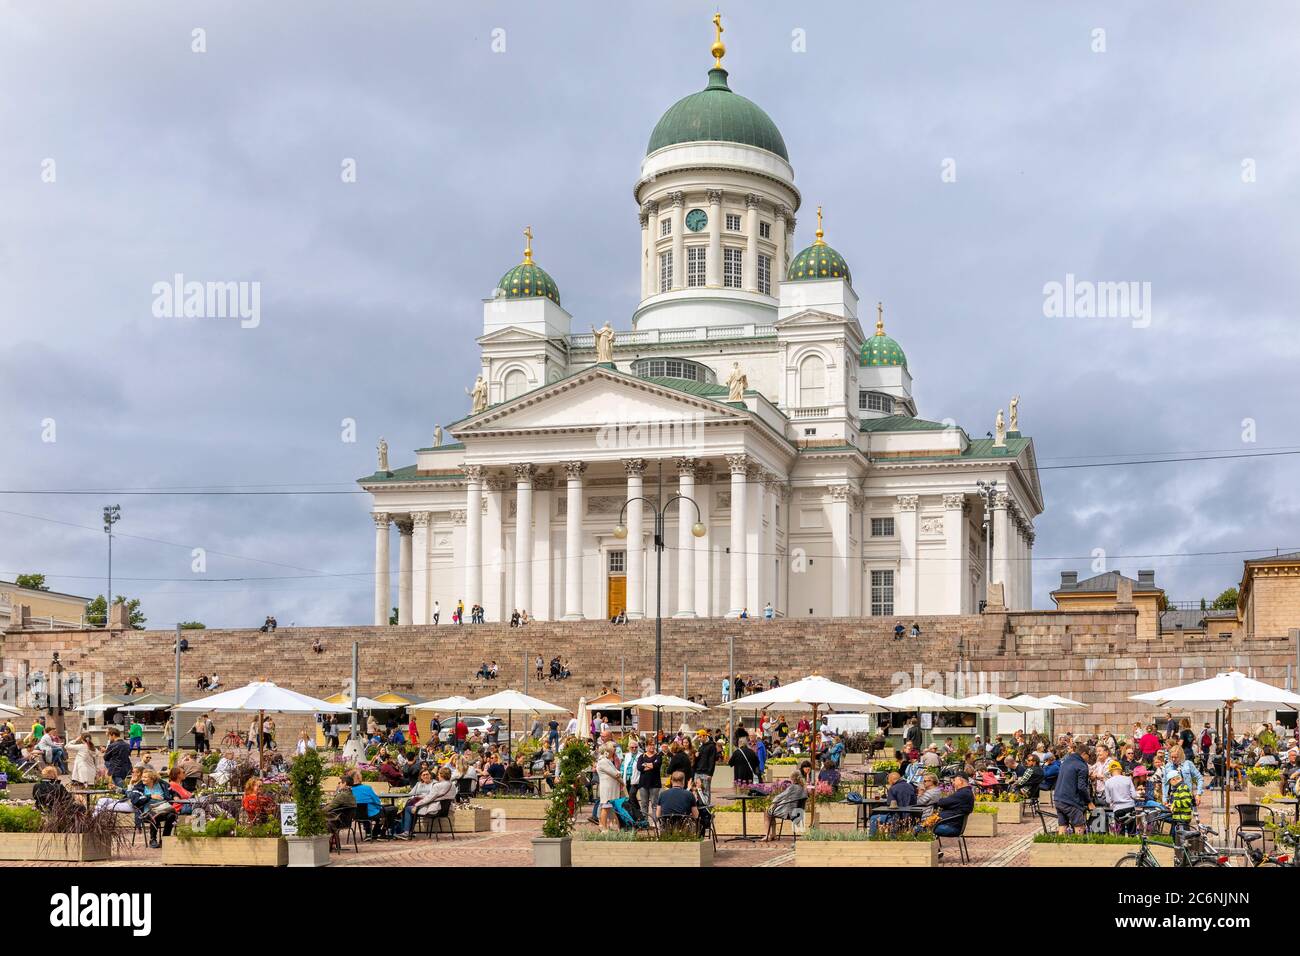 La plaza del Senado en el corazón de Helsinki se transforma en un restaurante gigante de verano. Los visitantes pueden disfrutar de sus bebidas y comida en un ambiente cultural. Foto de stock